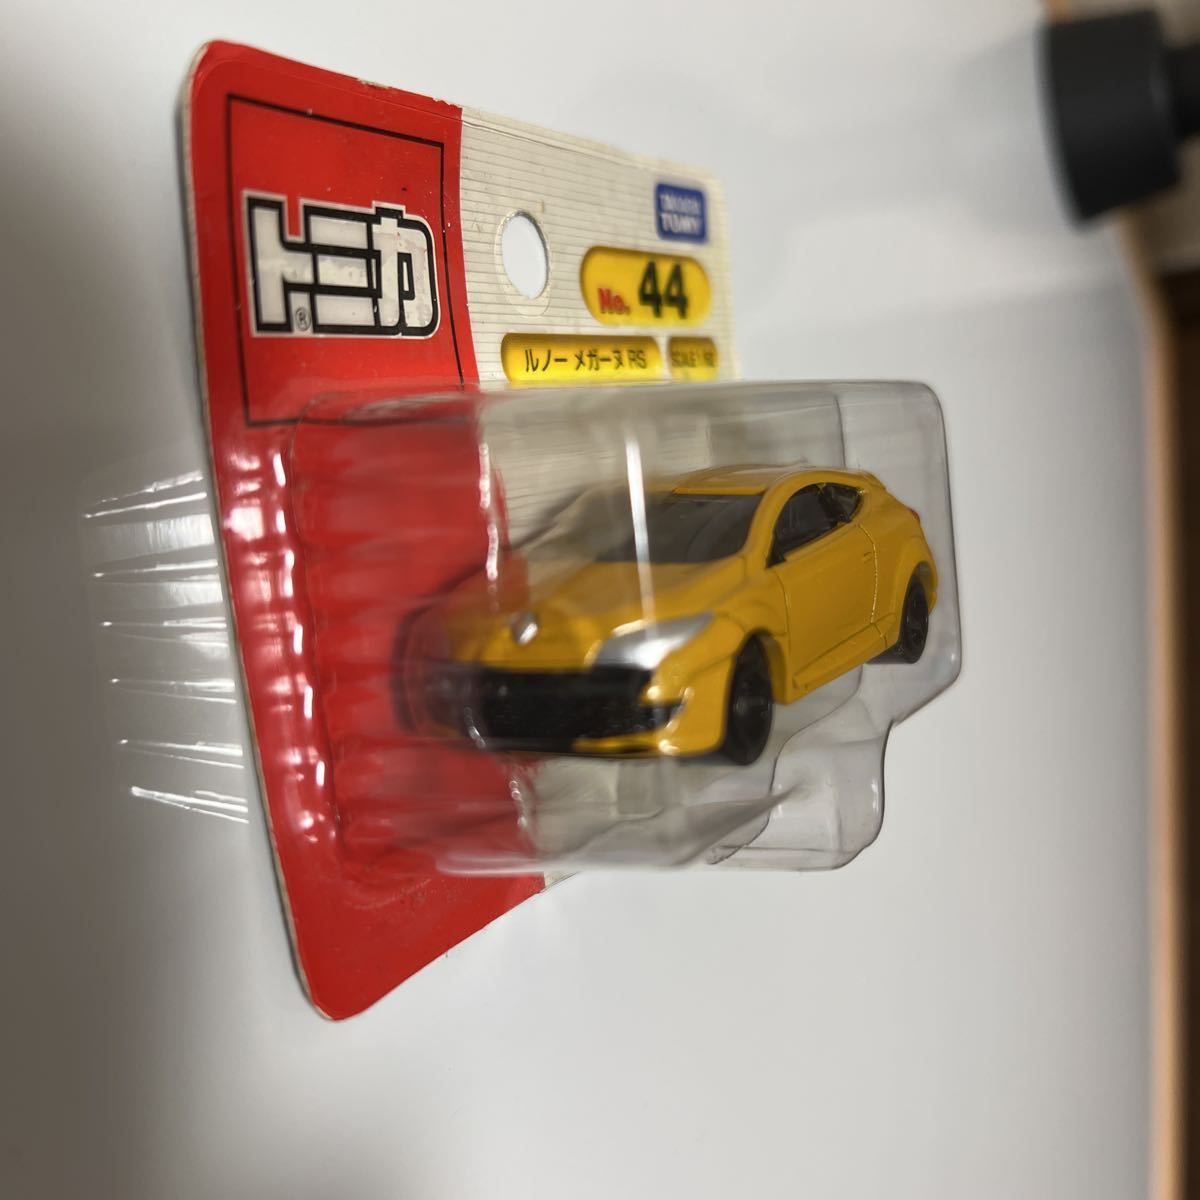 絶版トミカ No.44 ルノー メガーヌRS RENAULT Megane RS ハッチバック スポーツカー 黄色 イエロー ブリスターパッケージの画像2